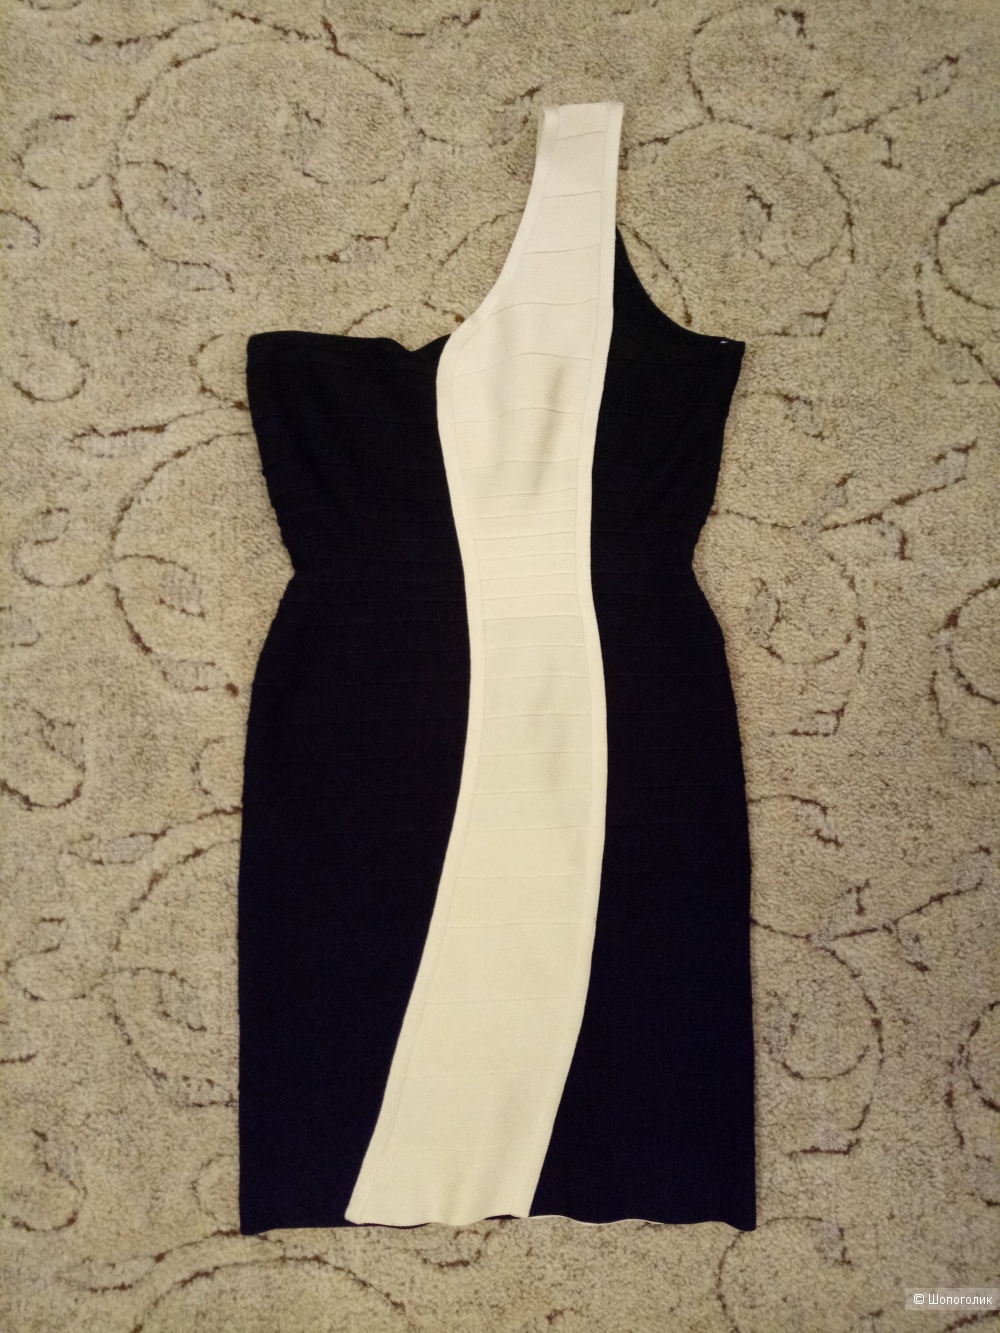 Платье Herve Leger, размер 46 рос.